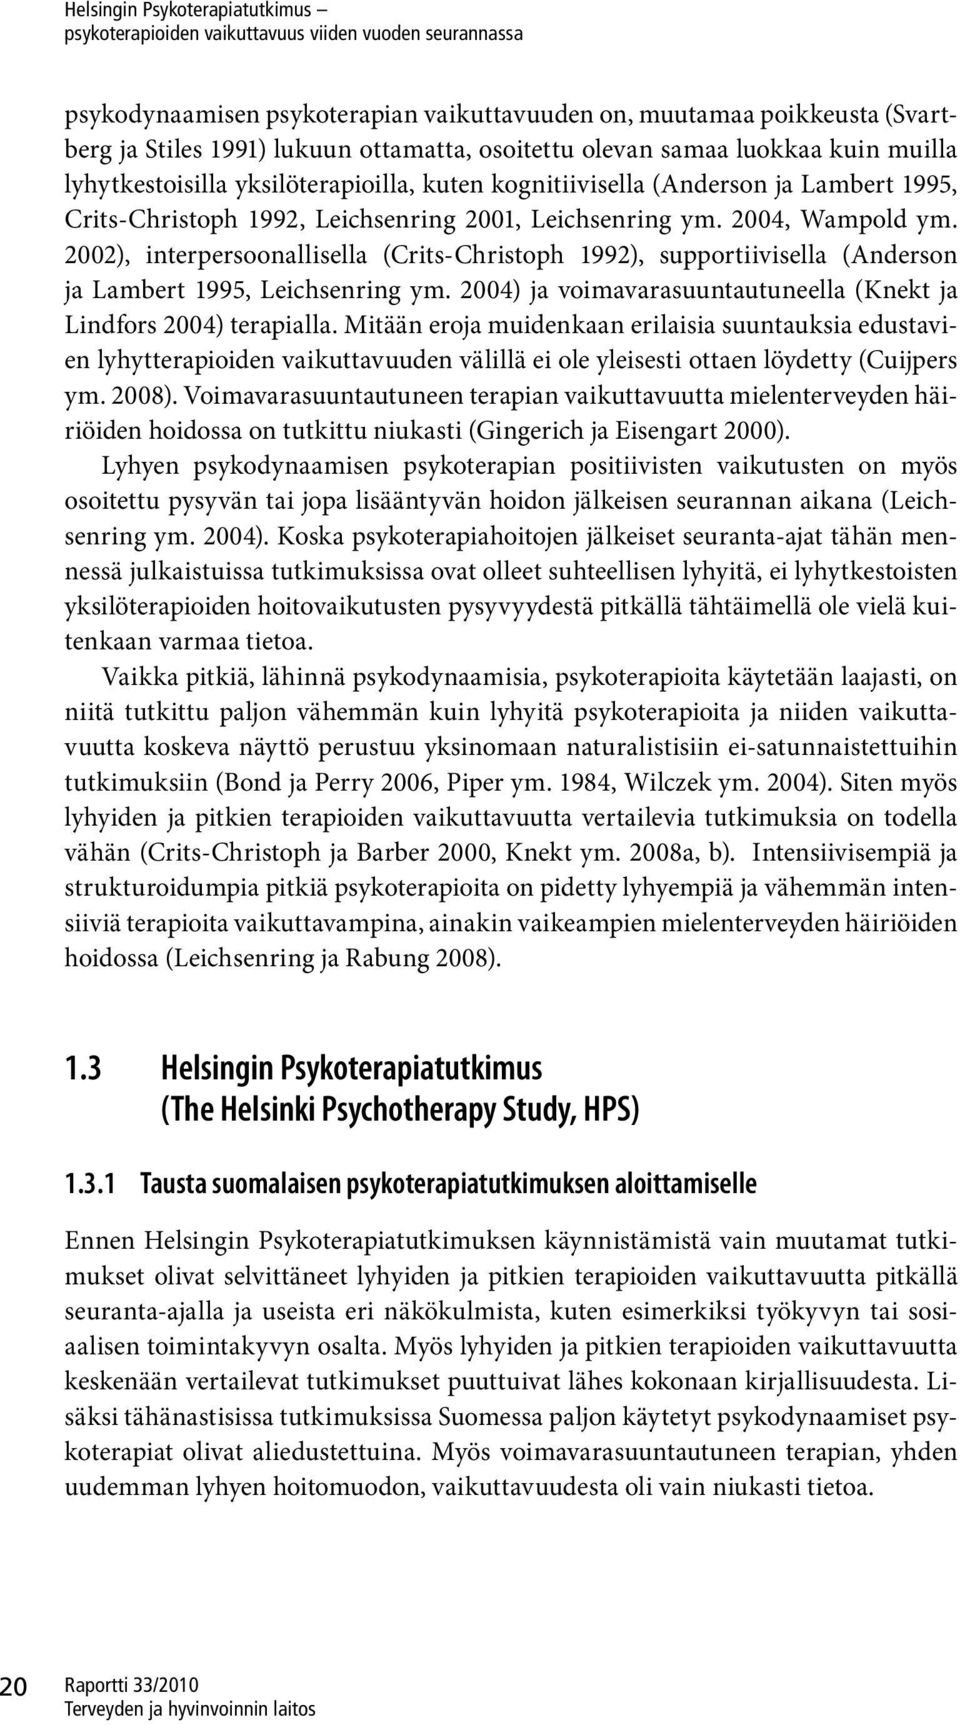 2002), interpersoonallisella (Crits-Christoph 1992), supportiivisella (Anderson ja Lambert 1995, Leichsenring ym. 2004) ja voimavarasuuntautuneella (Knekt ja Lindfors 2004) terapialla.